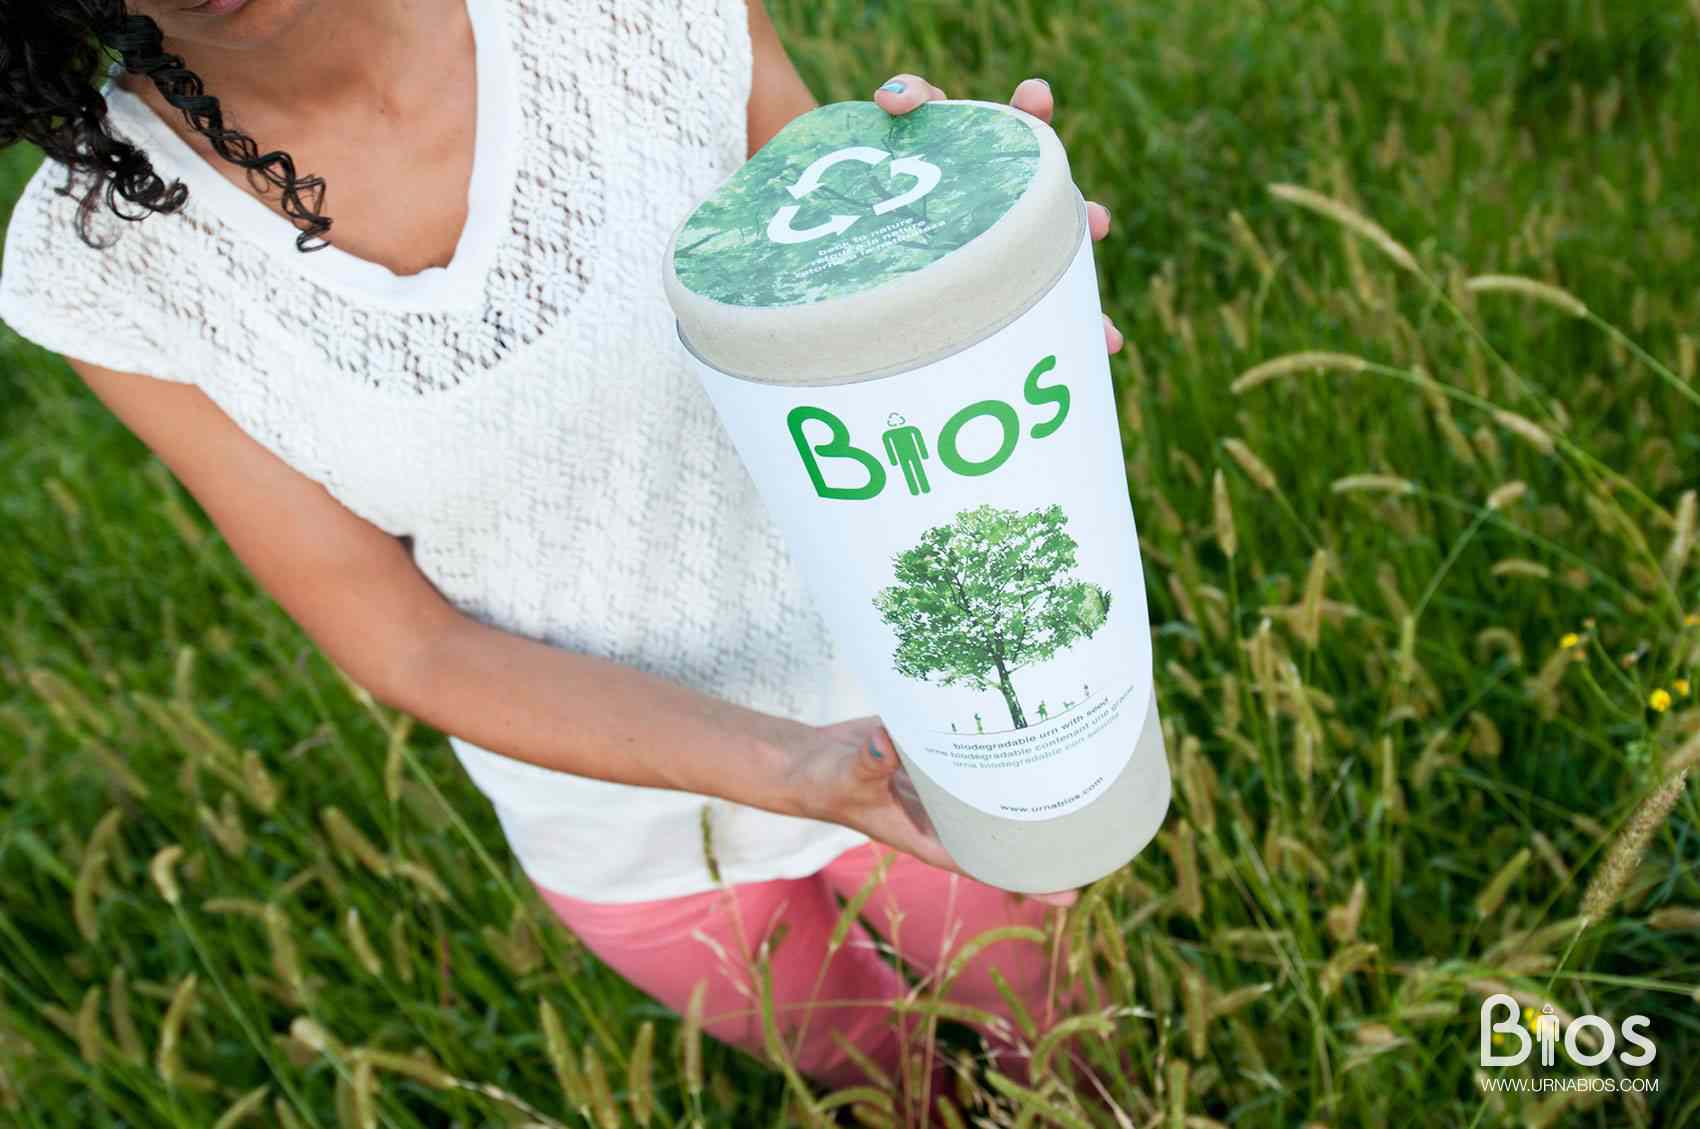 La urna Bios es 100% biodegradable y contiene las cenizas de tu ser querido, además de una semilla para cultivar un árbol